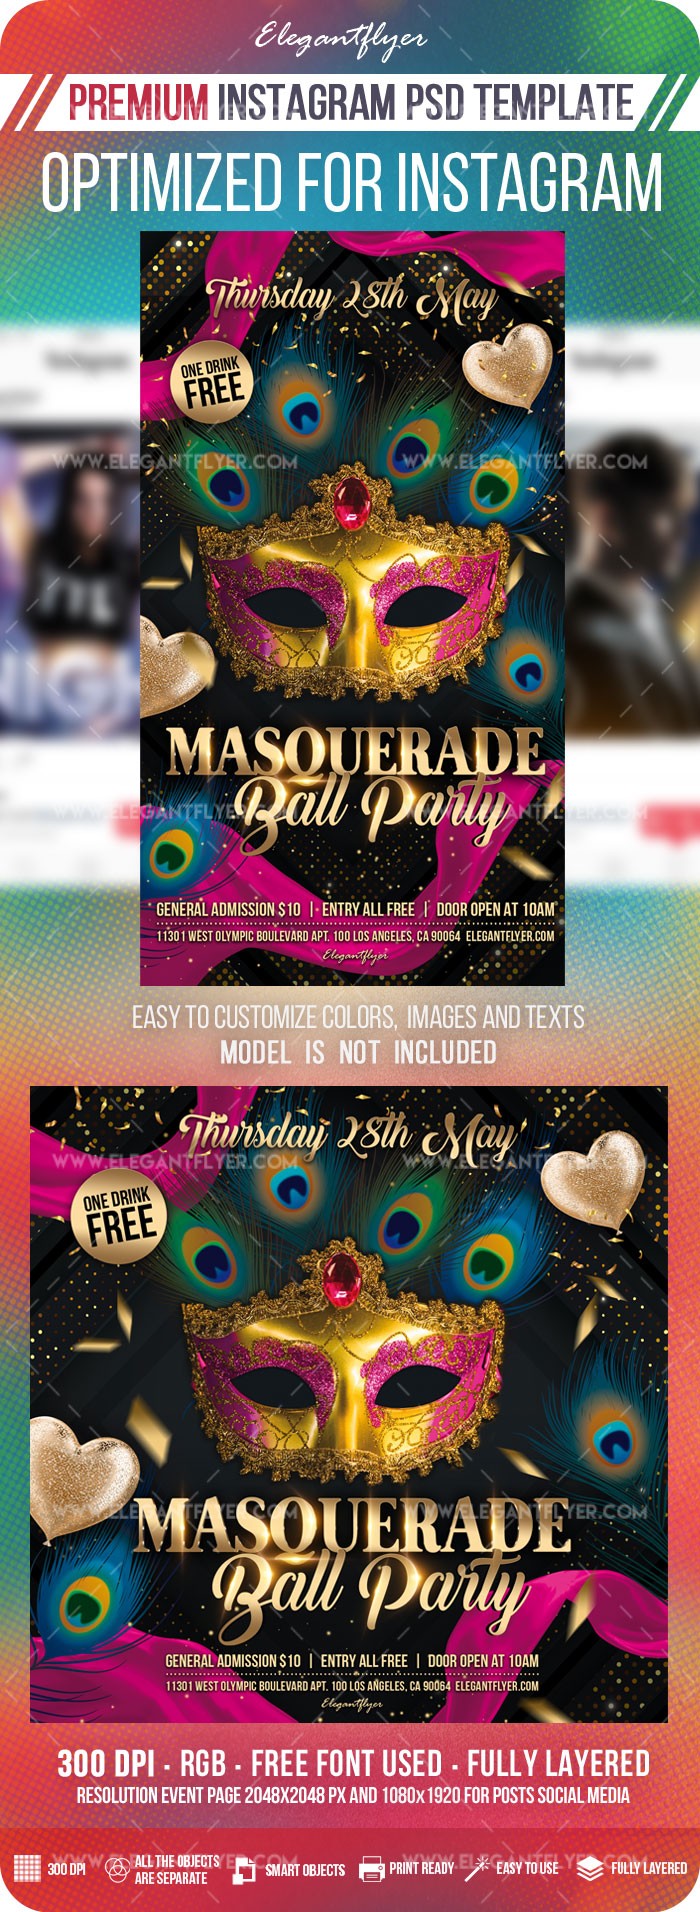 Masquerade Ball Party auf Instagram by ElegantFlyer